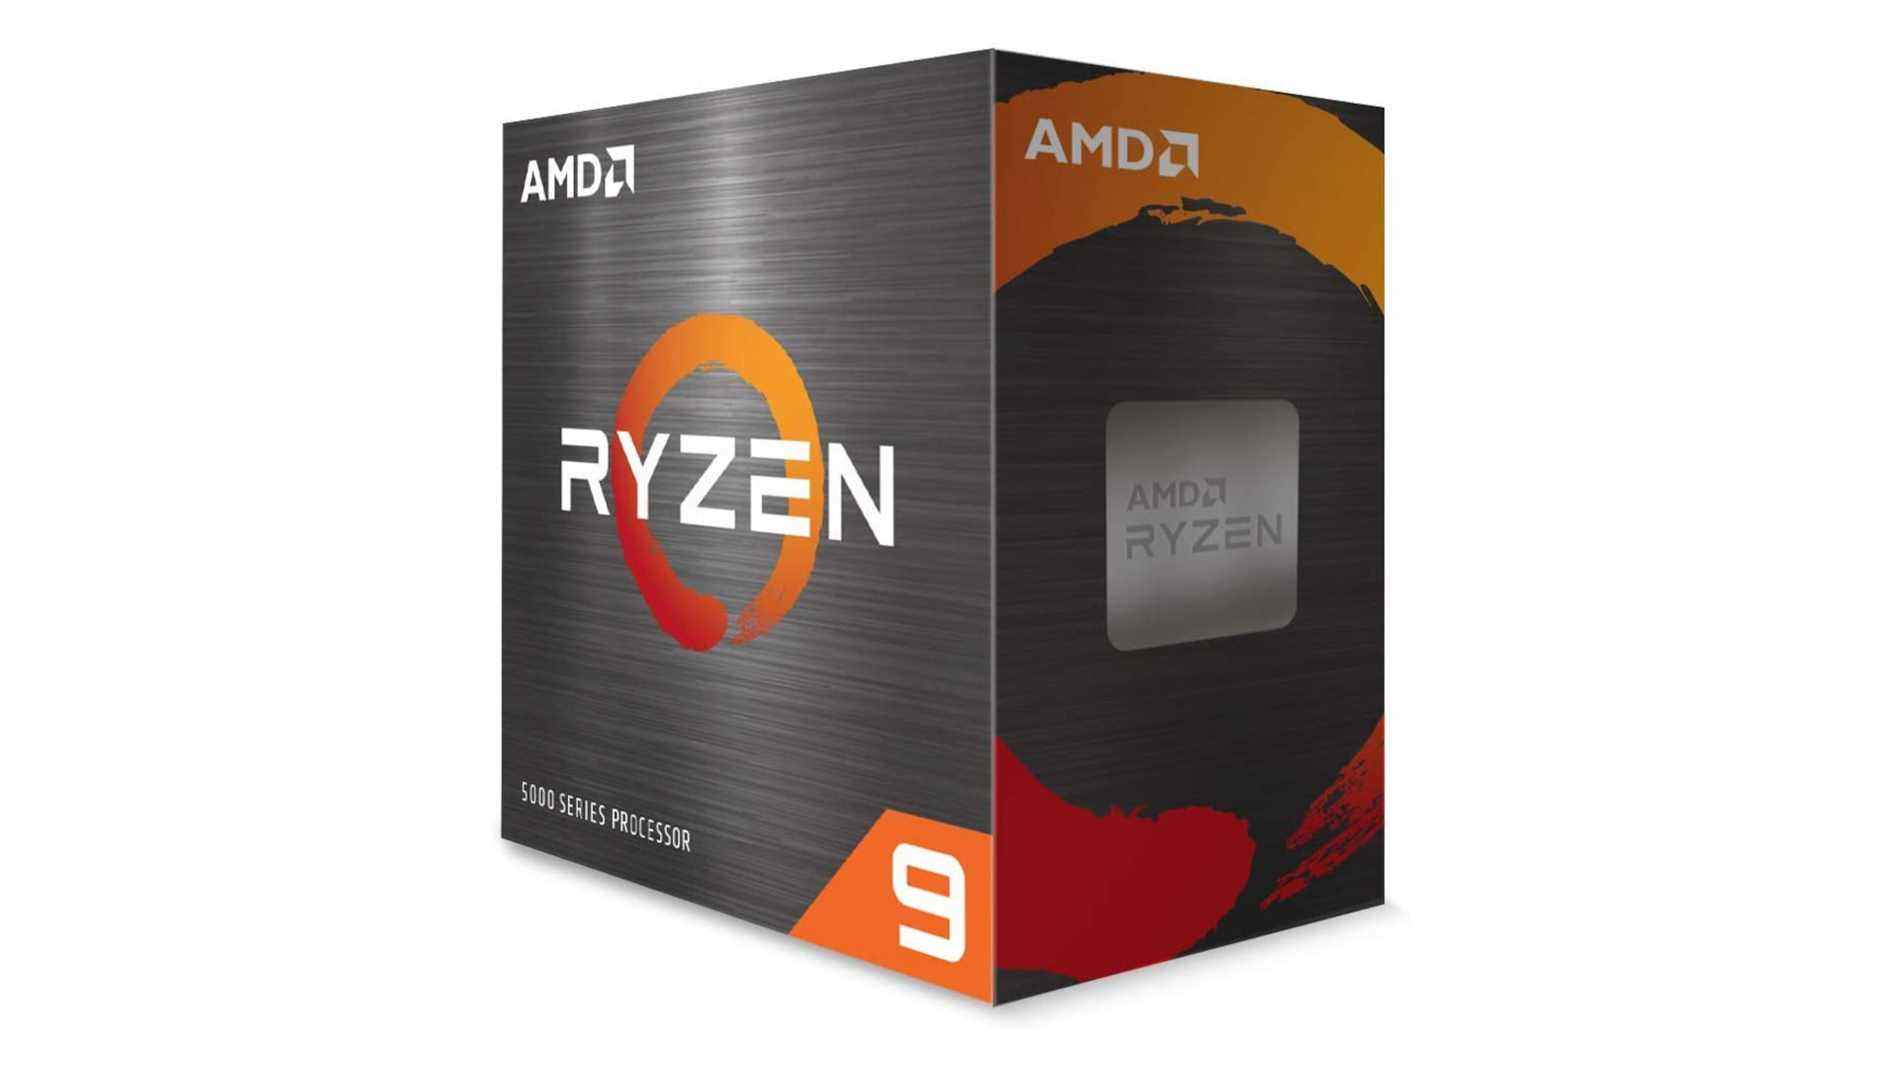 Le meilleur processeur Ryzen pour les jeux, l'AMD Ryzen 9 5900X